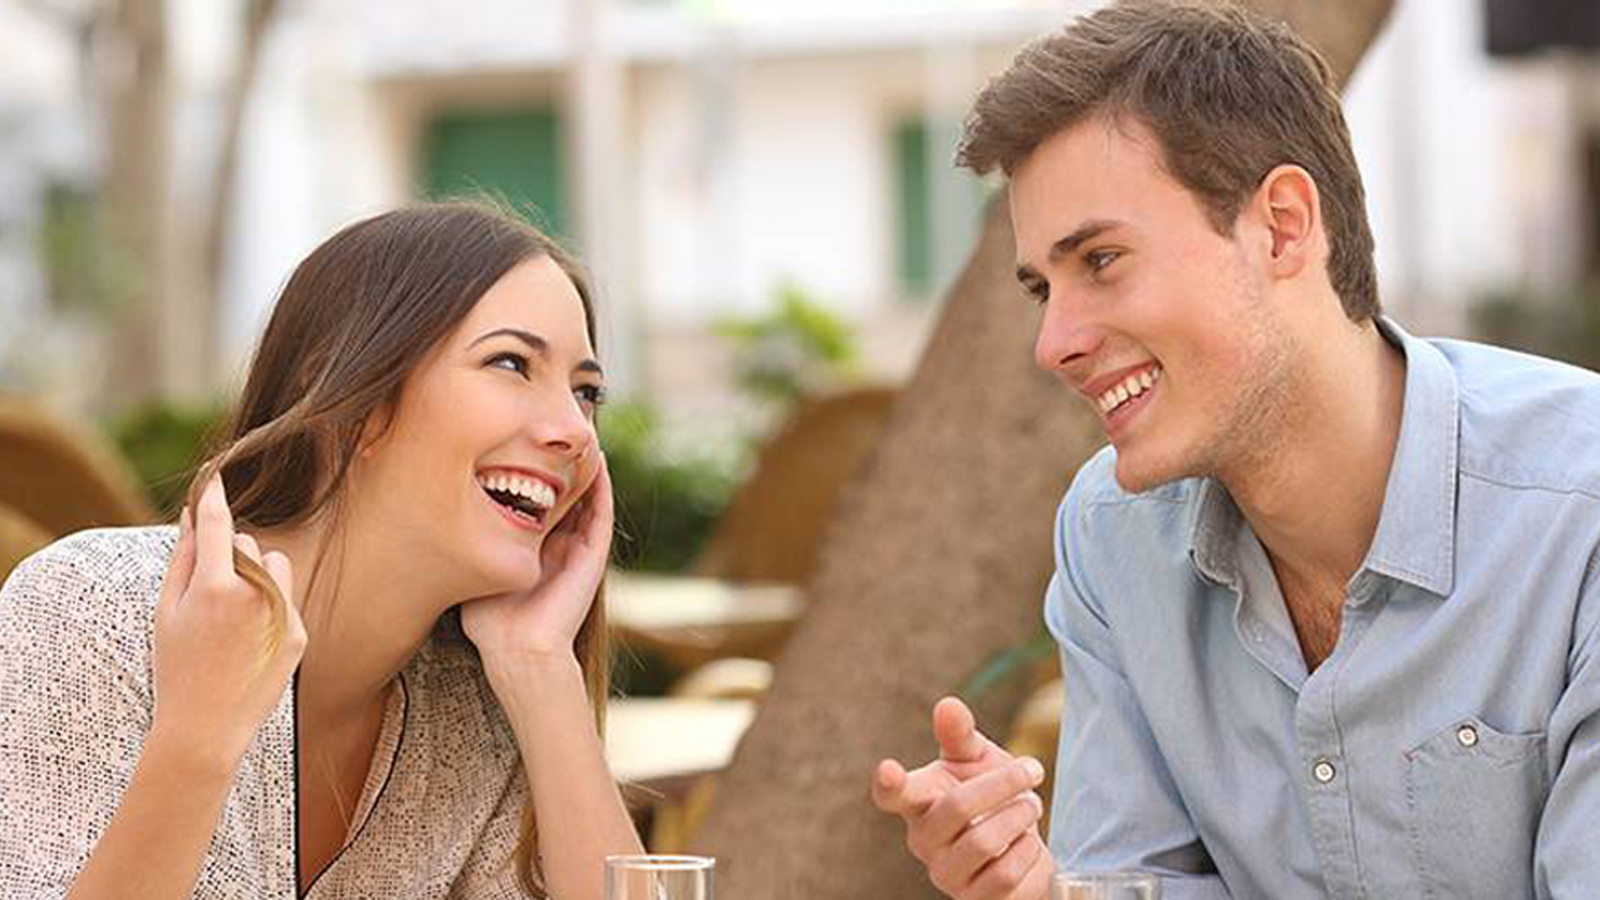 Sevgililer günü testi: Nasıl bir sevgili veya eşsin? 8 soruda kendini tanı